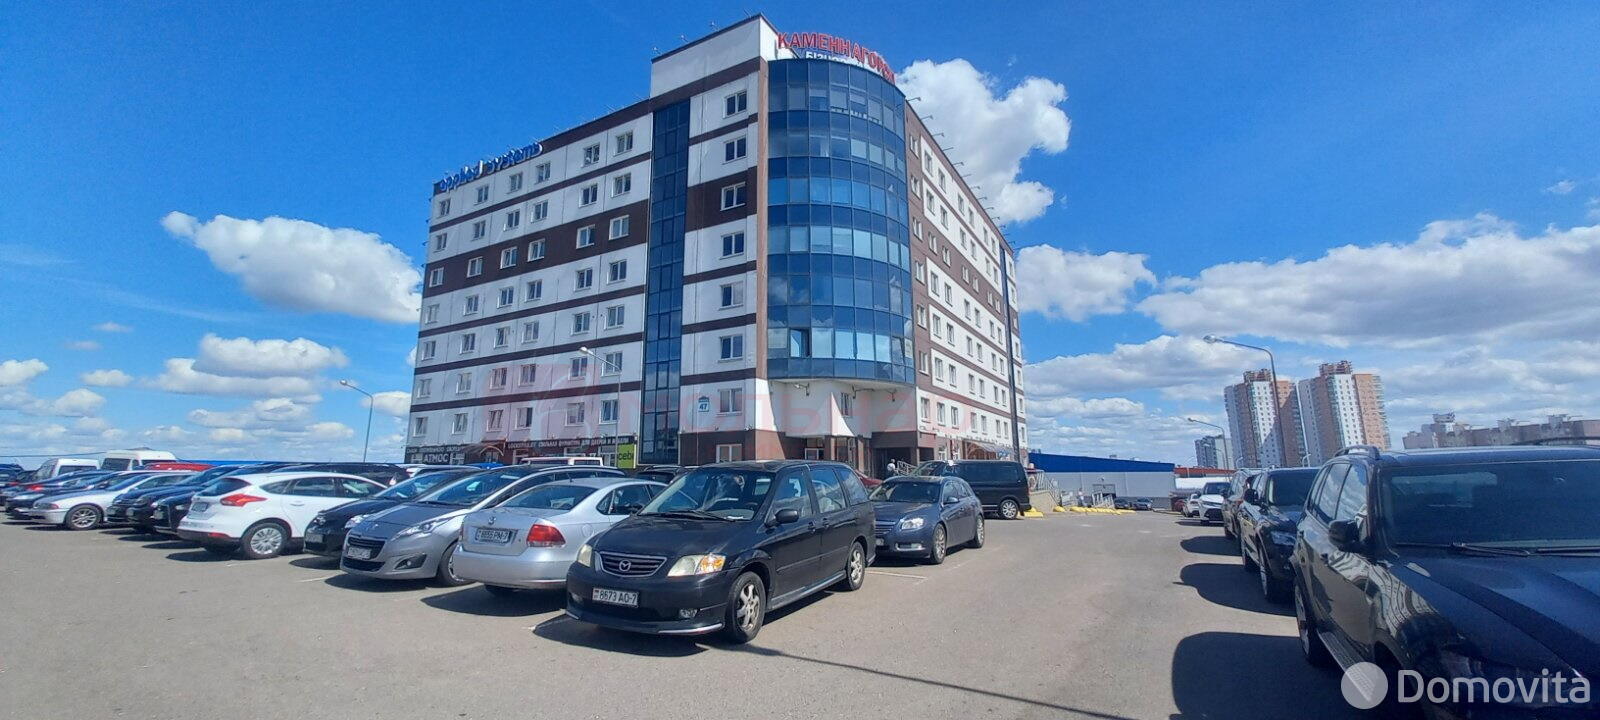 Продажа торгового помещения на ул. Каменногорская, д. 47 в Минске, 22149USD - фото 1